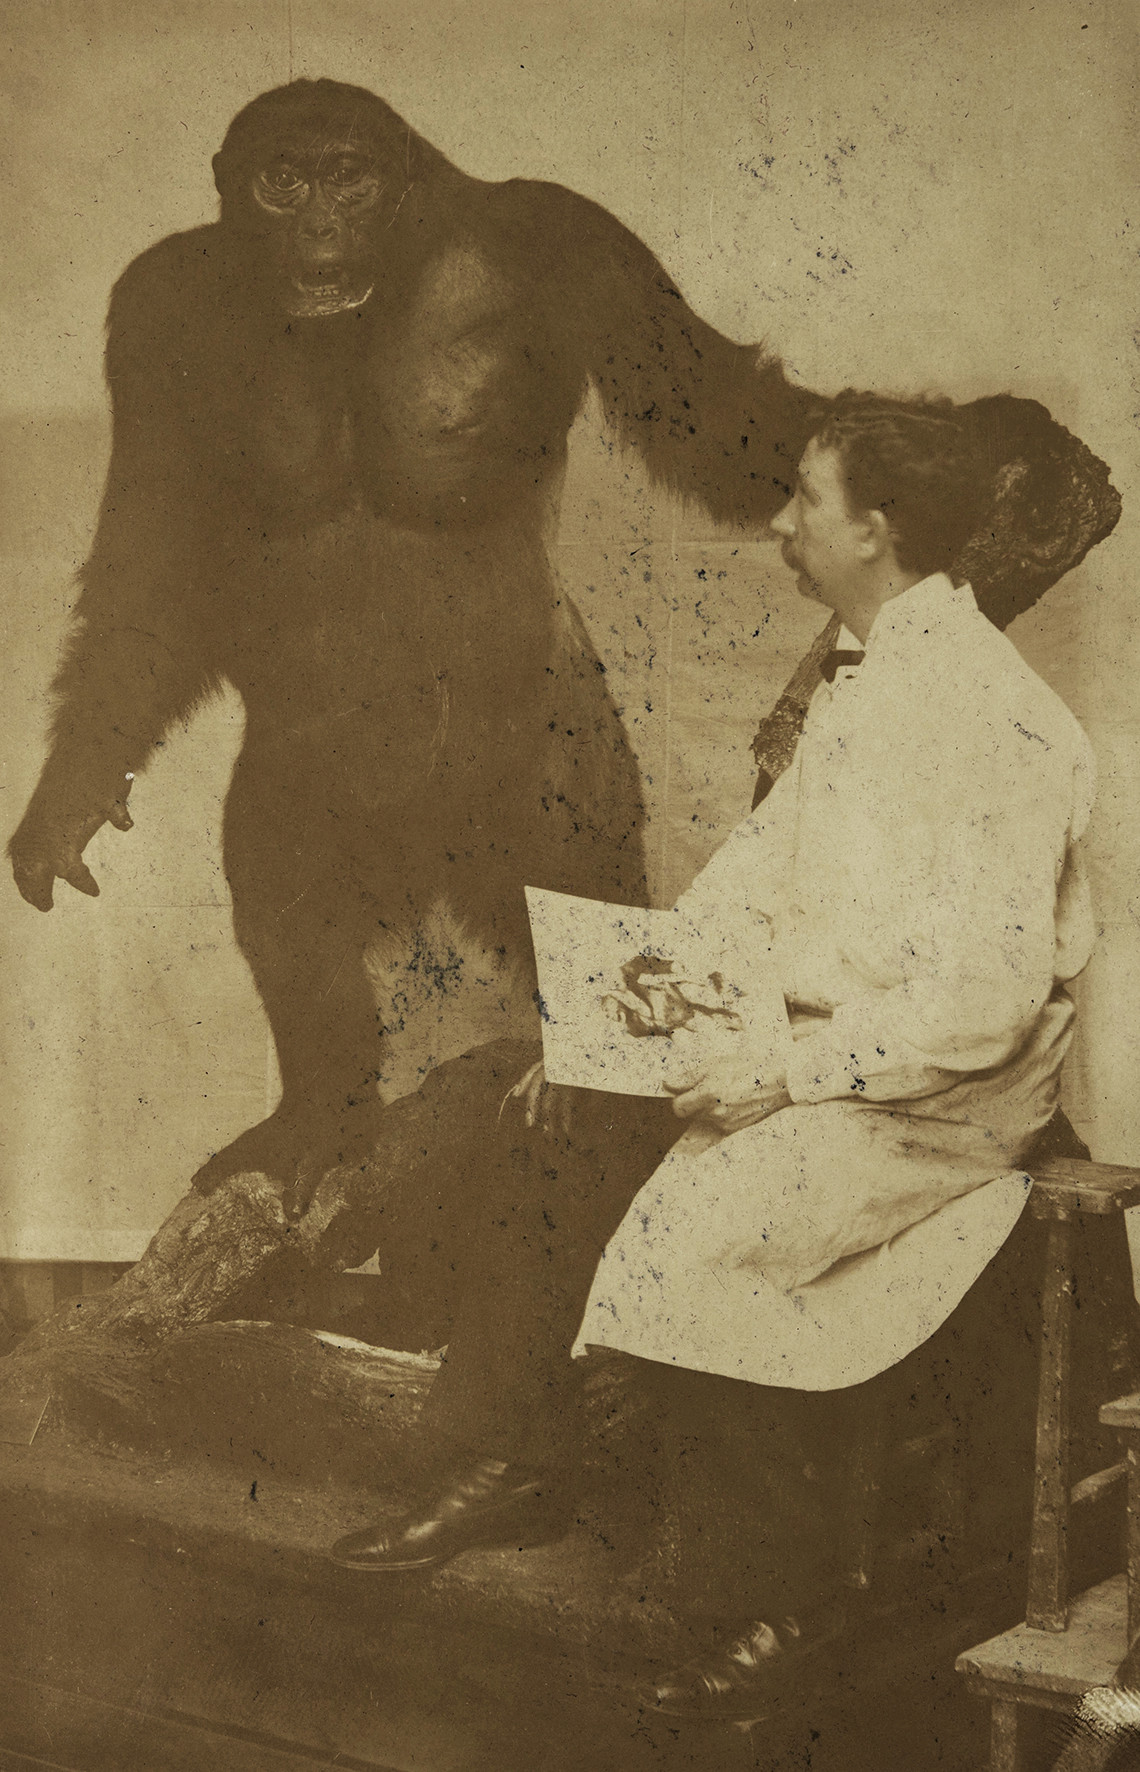 Sepiafarbene alte Fotografie, auf der links ein präparierter Gorilla aufrecht auf zwei Beinen auf einer künstlichen Wurzel steht. Ein Arm des Tieres ist ausgestreckt und stützt sich auf einen künstlichen Baumstamm. Rechts im Bild betrachtet ein Mann in weißem Kittel, der auf einer Art Werkstattbank sitzt und eine Zeichnung in der Hand hält, den Gorilla neben sich.